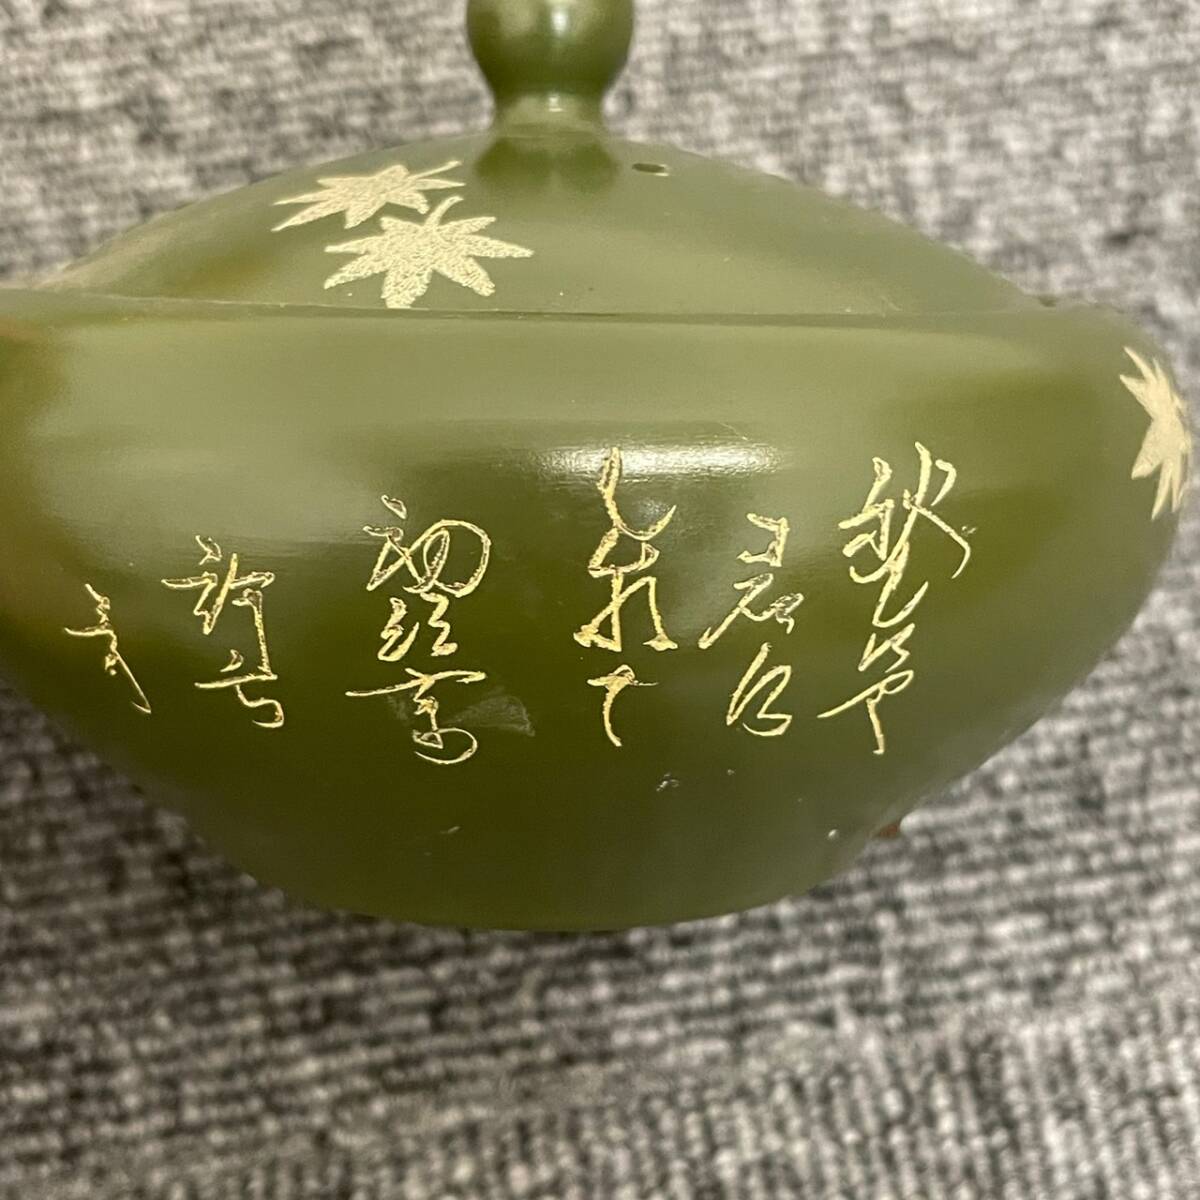 [HPF-3925a] 1 иен ~ заварной чайник совместно лот не использовался Tokoname . автор различный Zaimei чайная посуда . чайная посуда украшение античный коллекция текущее состояние хранение товар 